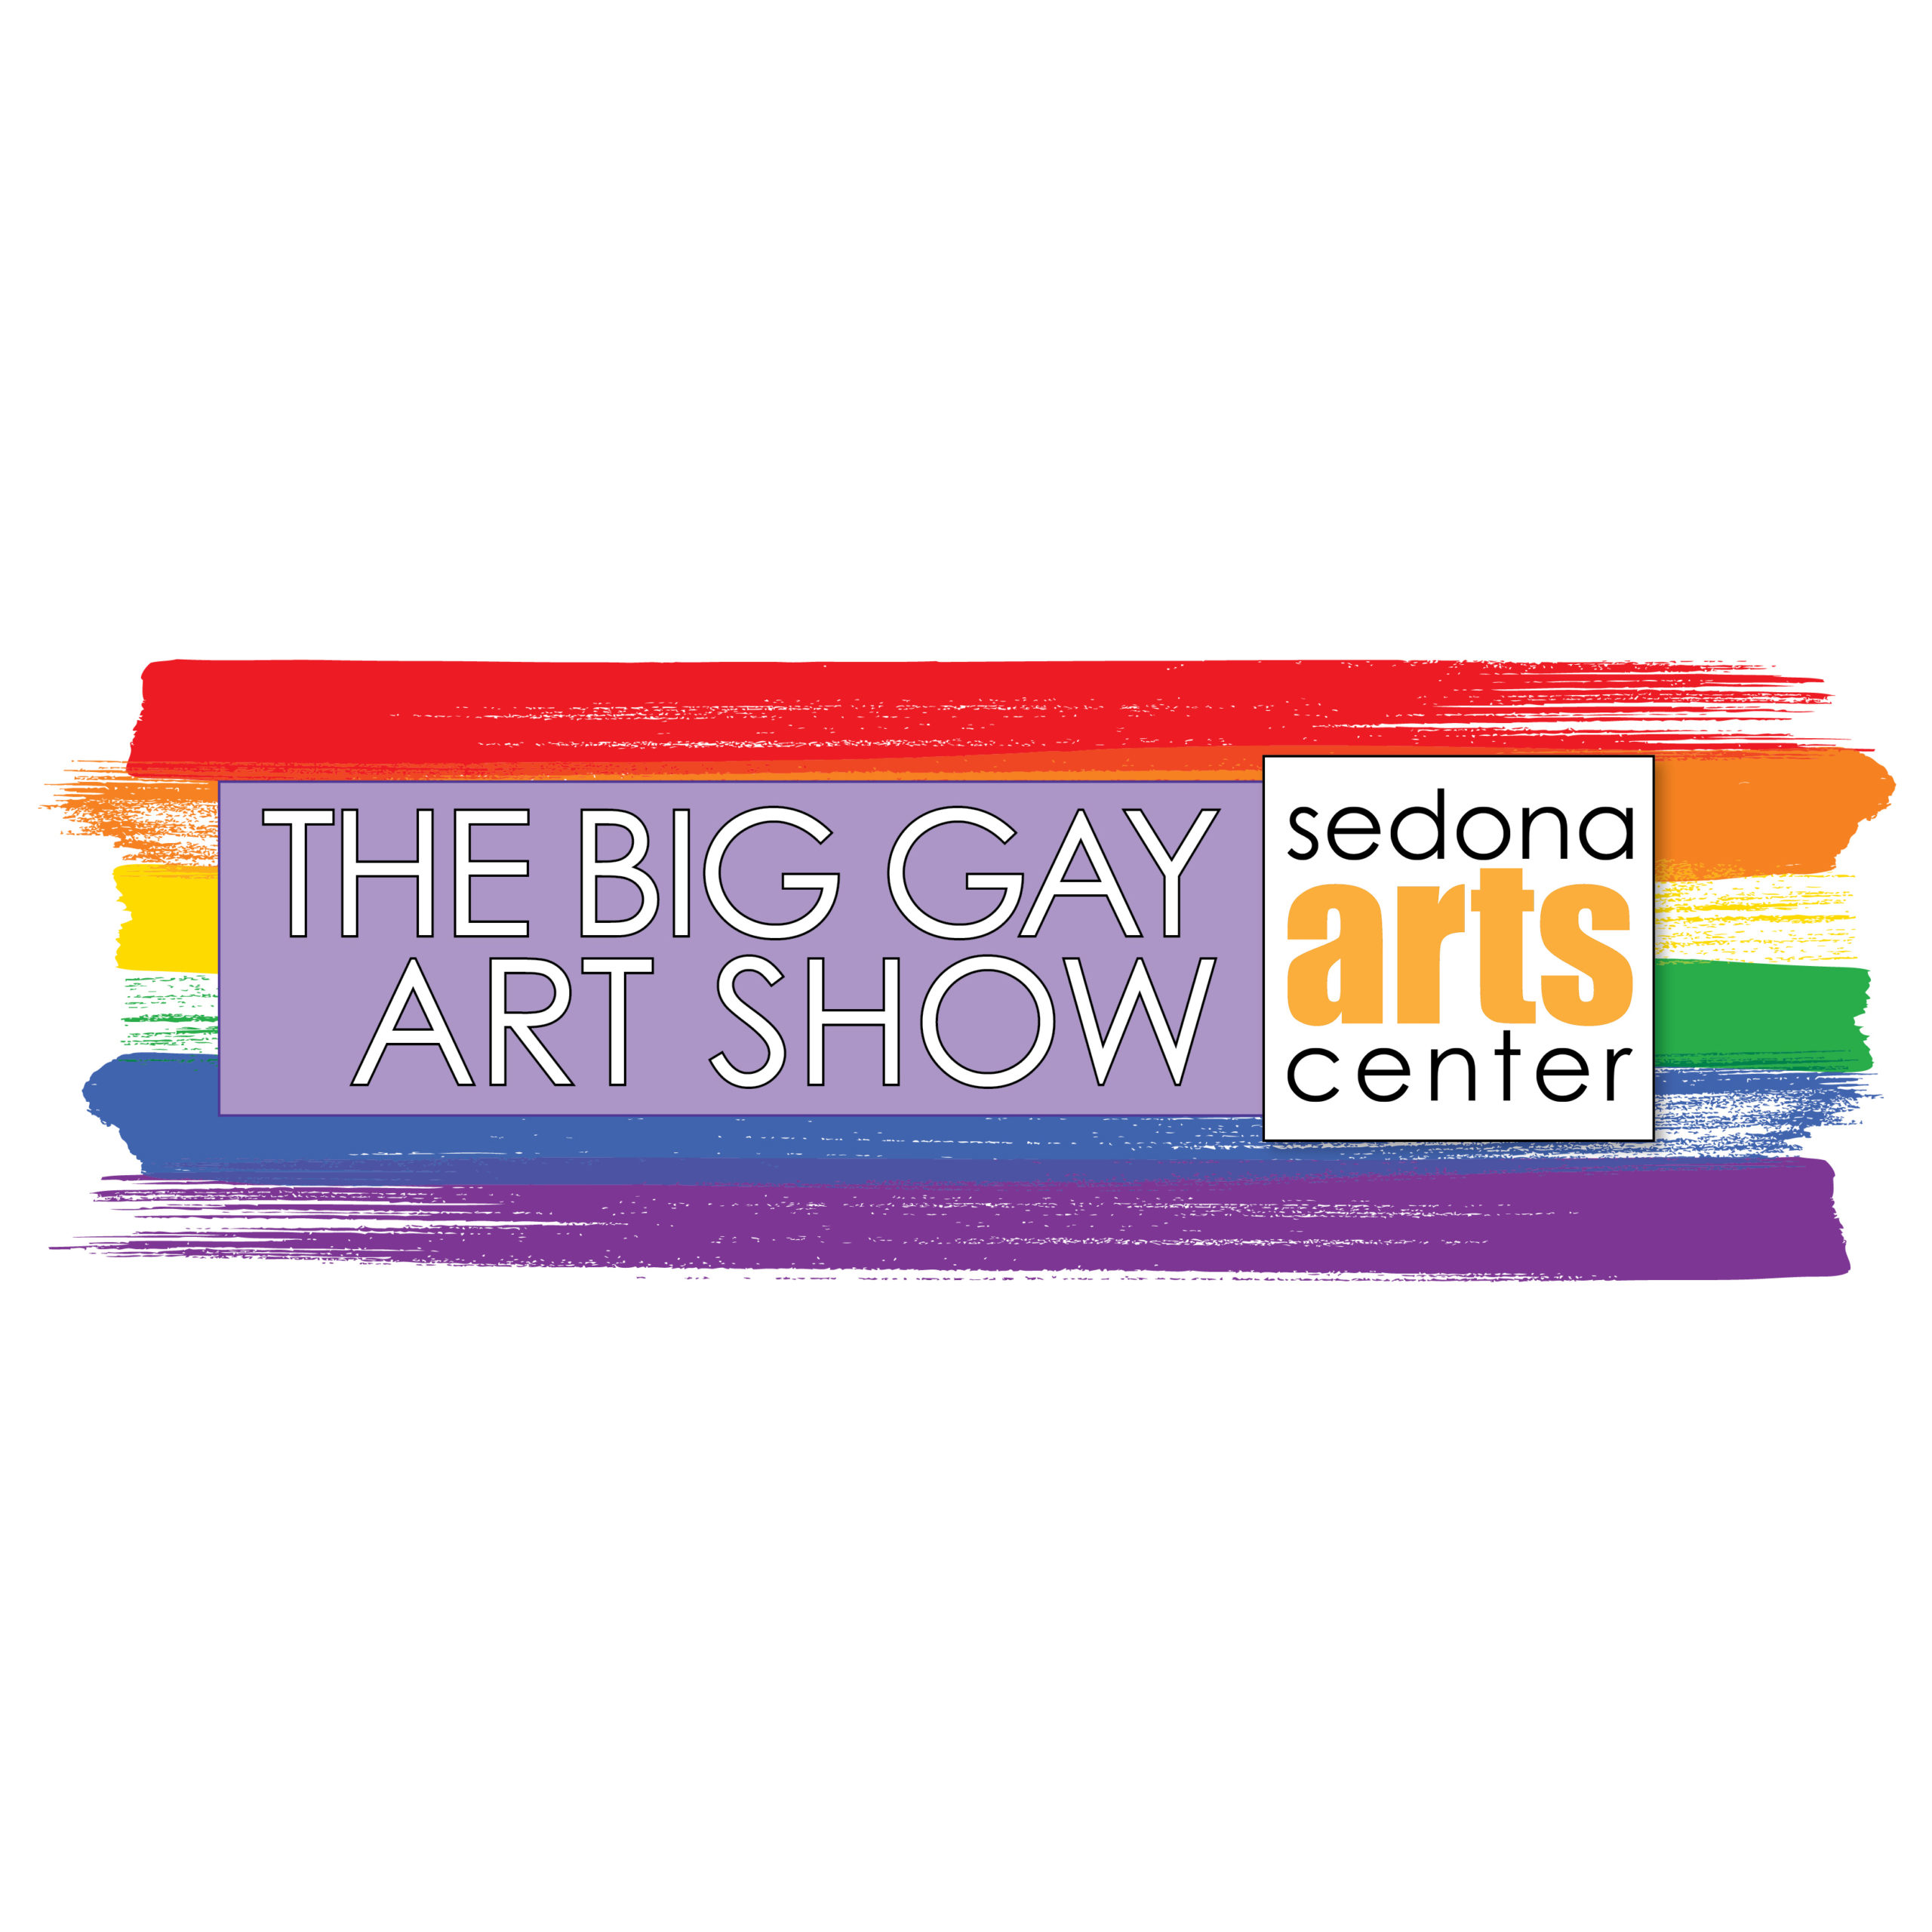 The Big Gay Art Show